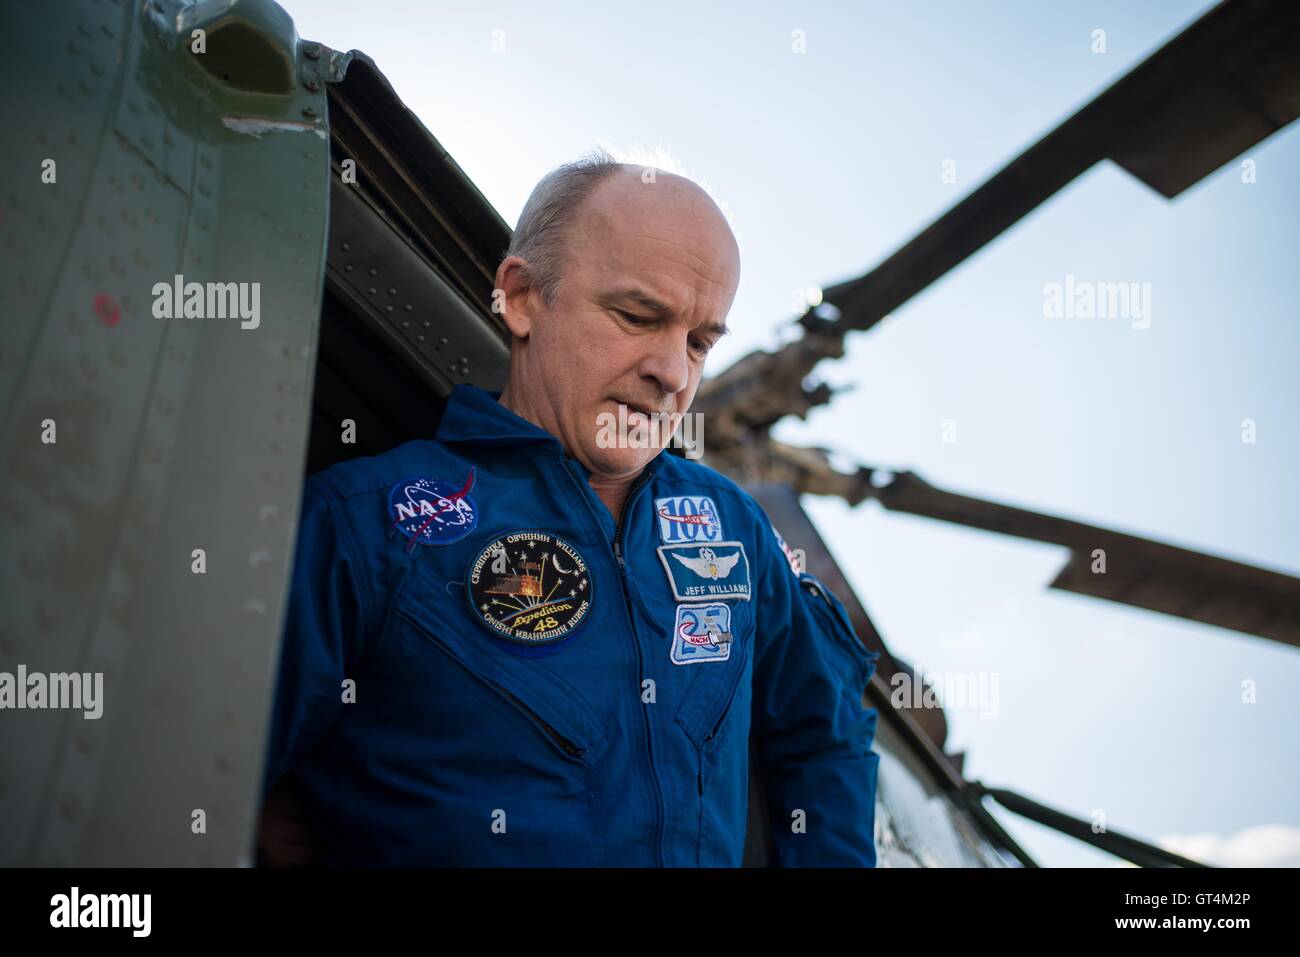 L'astronauta della NASA Jeff Williams arriva a Karaganda Aeroporto in Kazakistan aeroporto dopo egli, insieme con la Stazione Spaziale Internazionale Expedition 48 equipaggio, sbarcati Soyuz TMA-20M capsula Settembre 7, 2016 dopo 172 giorni nello spazio. Foto Stock